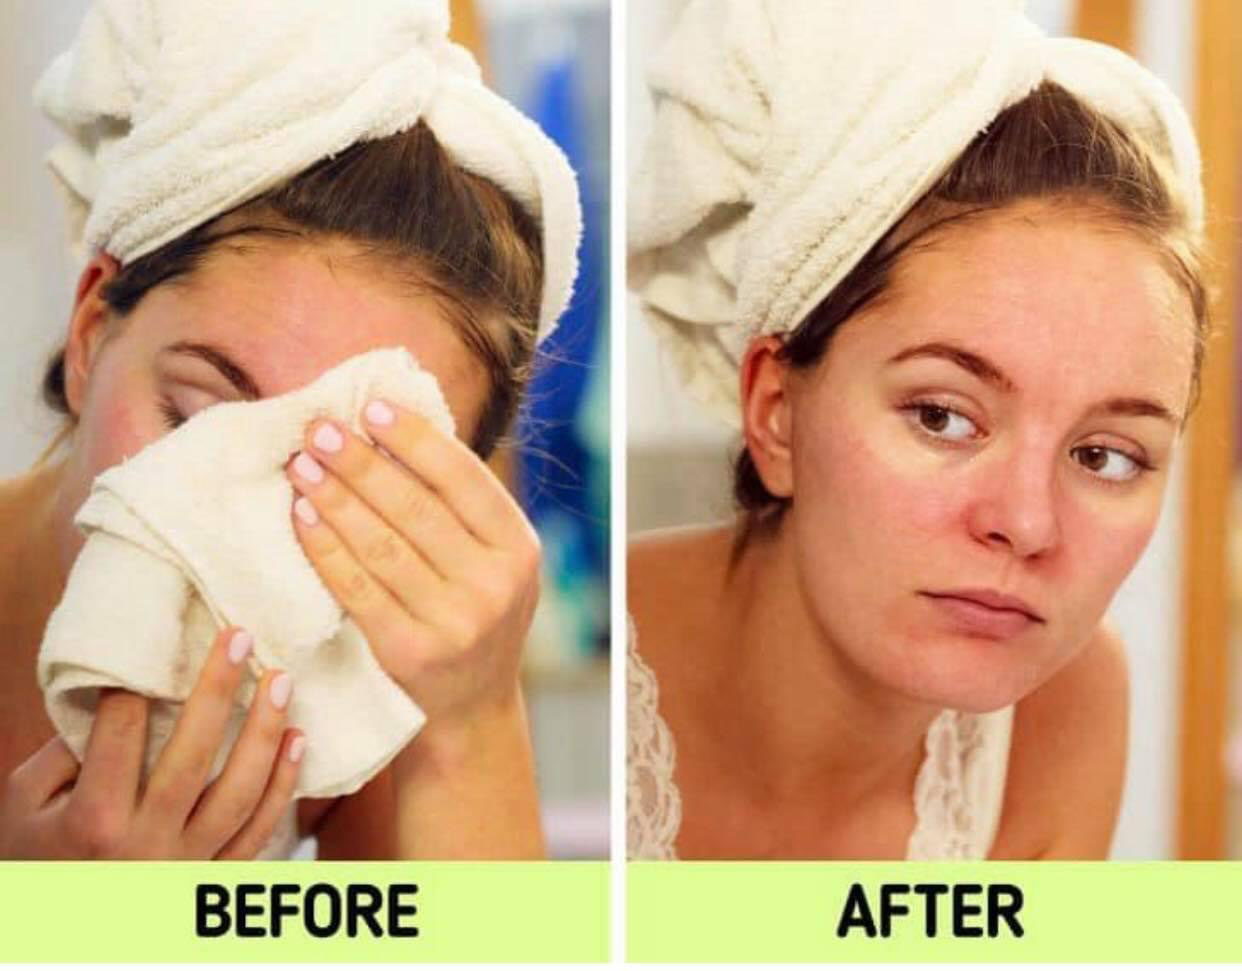 Nhiều người có thói quen sử dụng khăn mặt như một hình thức tẩy da chết, điều này đòi hỏi bạn phải chà xát cực mạnh vào làn da. Đây cũng là nguyên nhân chính gây kích ứng và chảy xệ da ở một số vị trí.